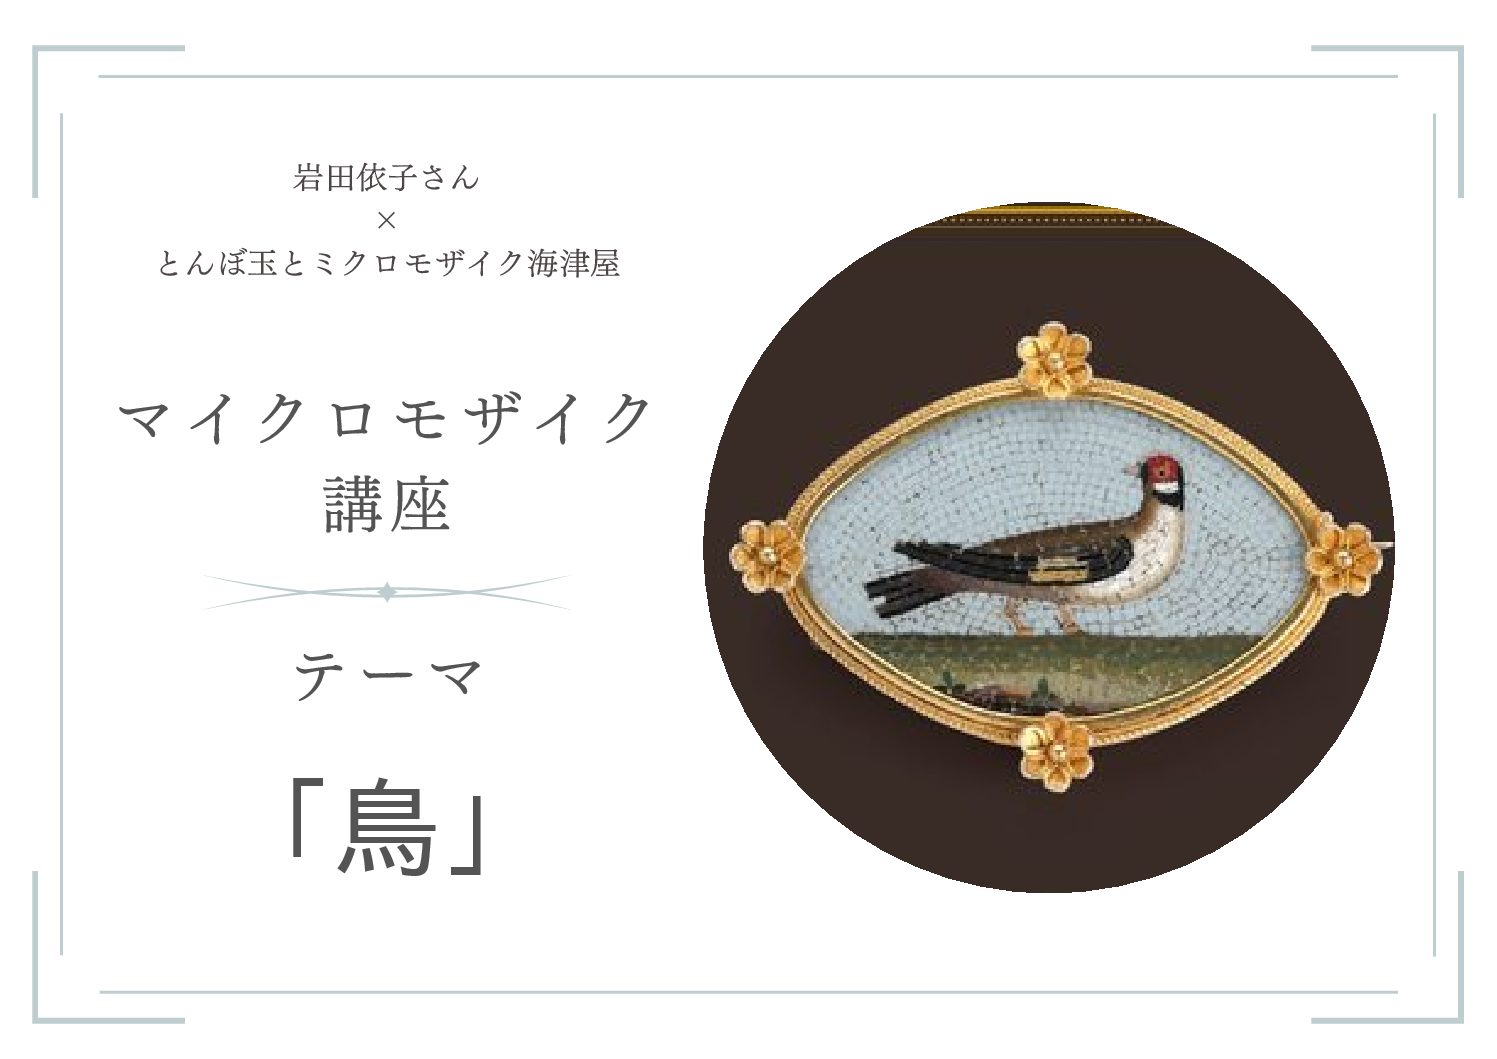 【開催報告】マイクロモザイク講座「鳥」